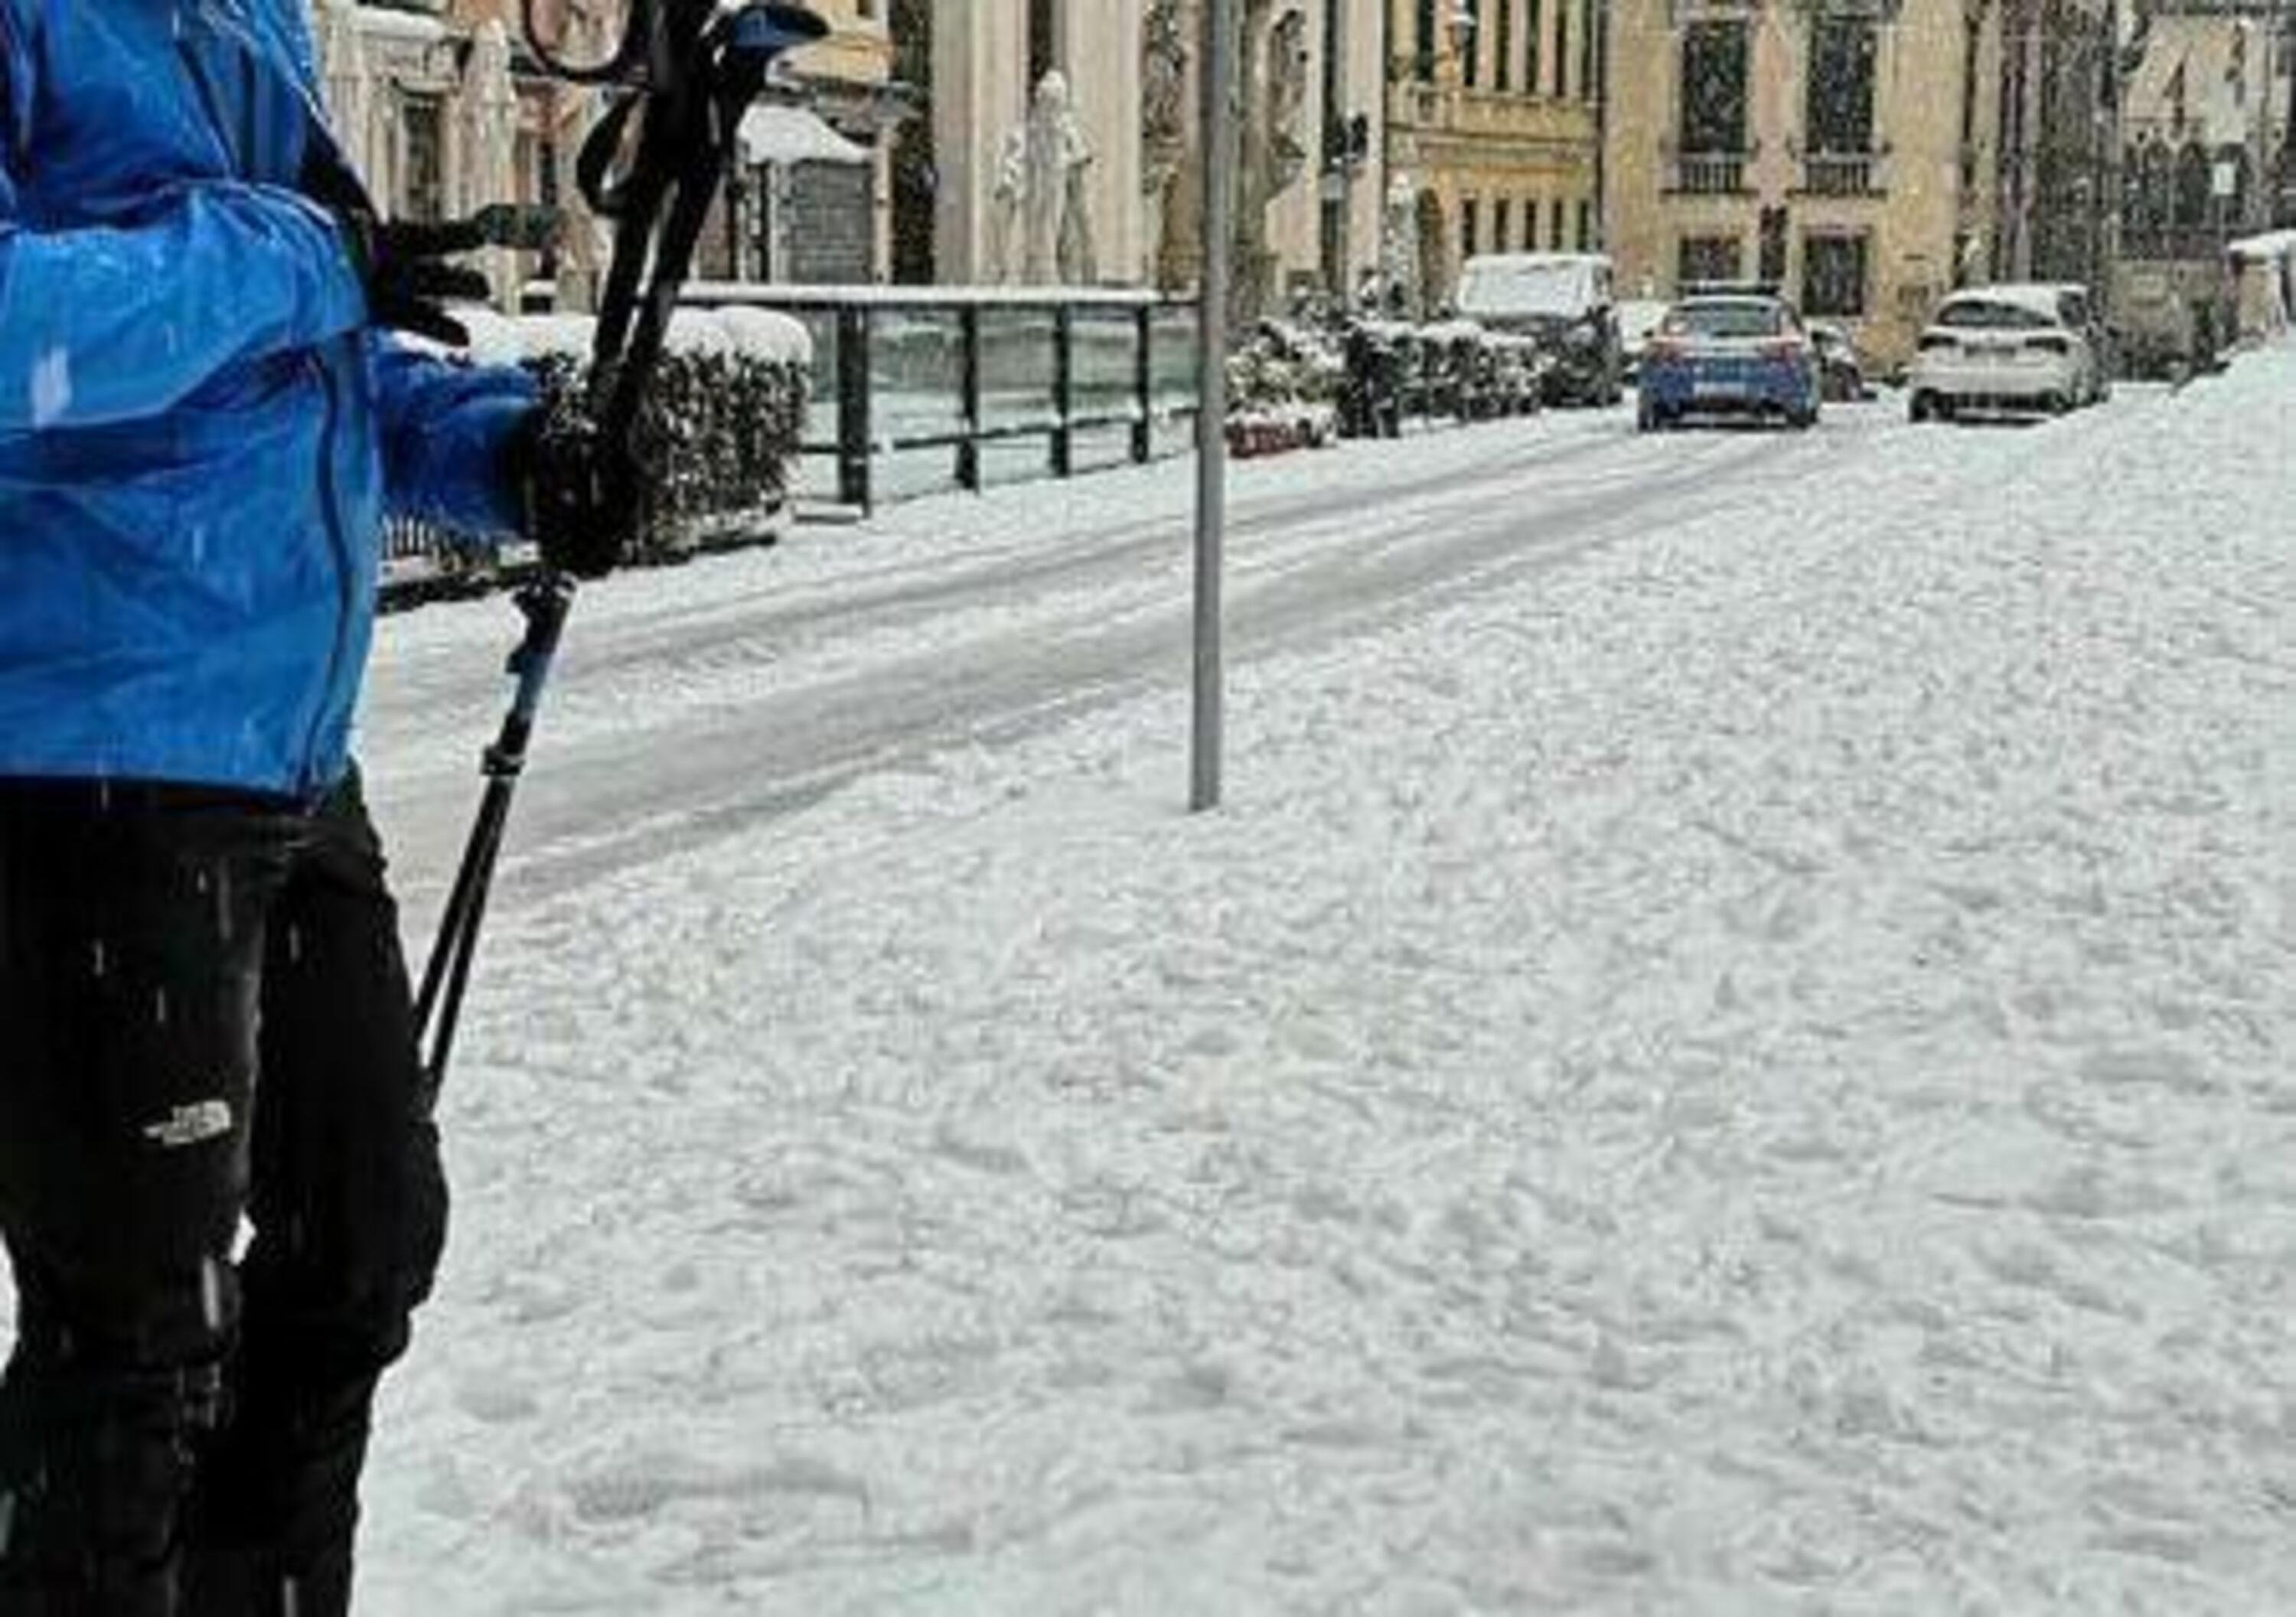 Neve in strada e niente auto: per andare in piazza a Vicenza prende gli sci